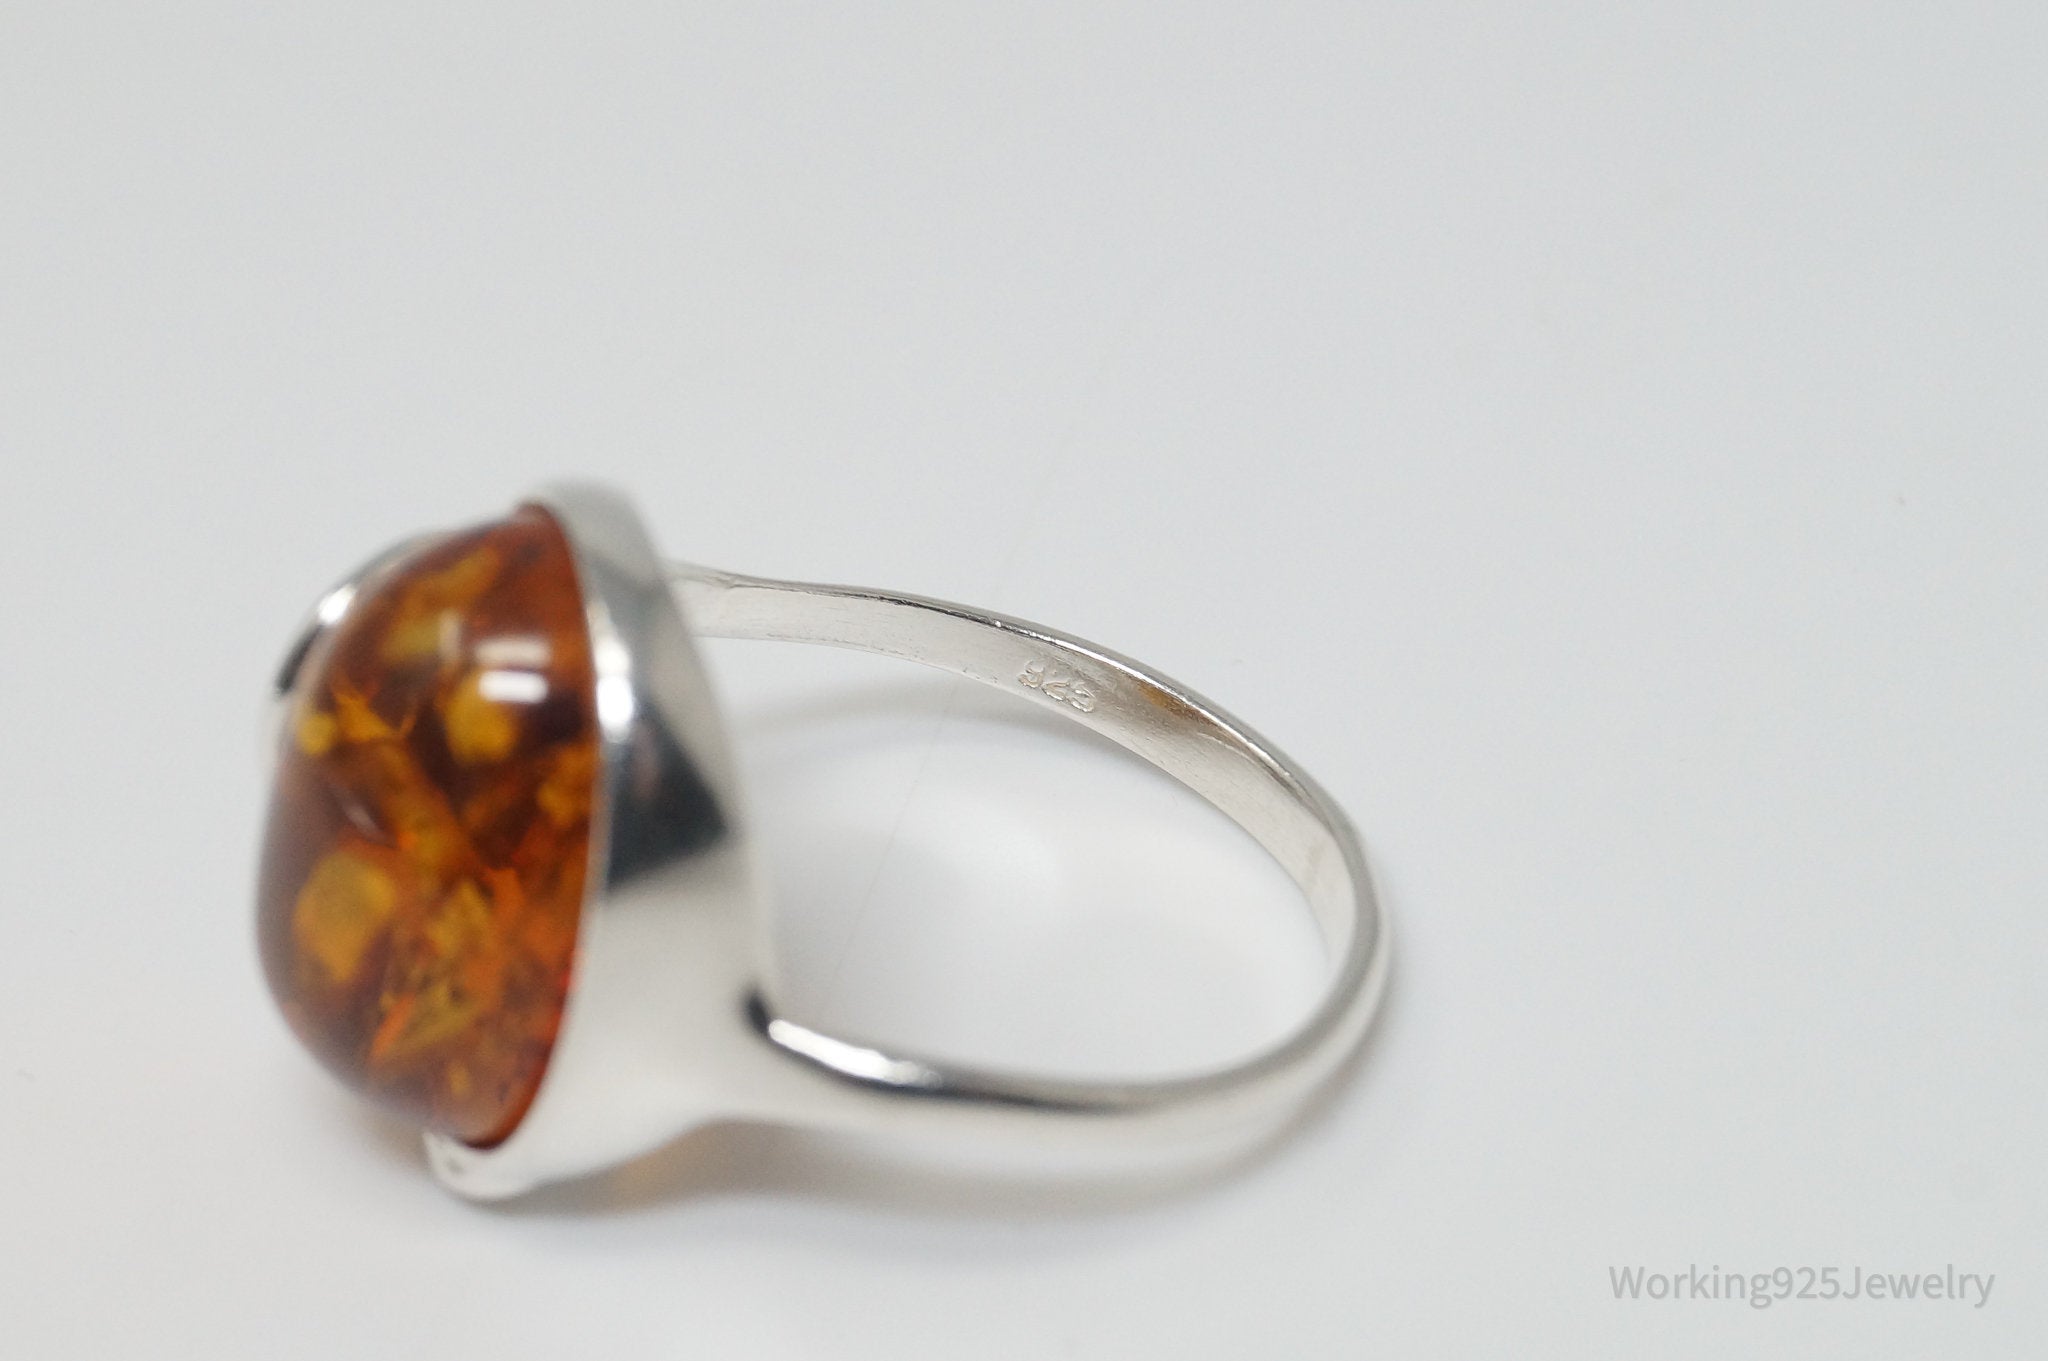 Vintage Amber Modernist Sterling Silver Ring - Size 8.25